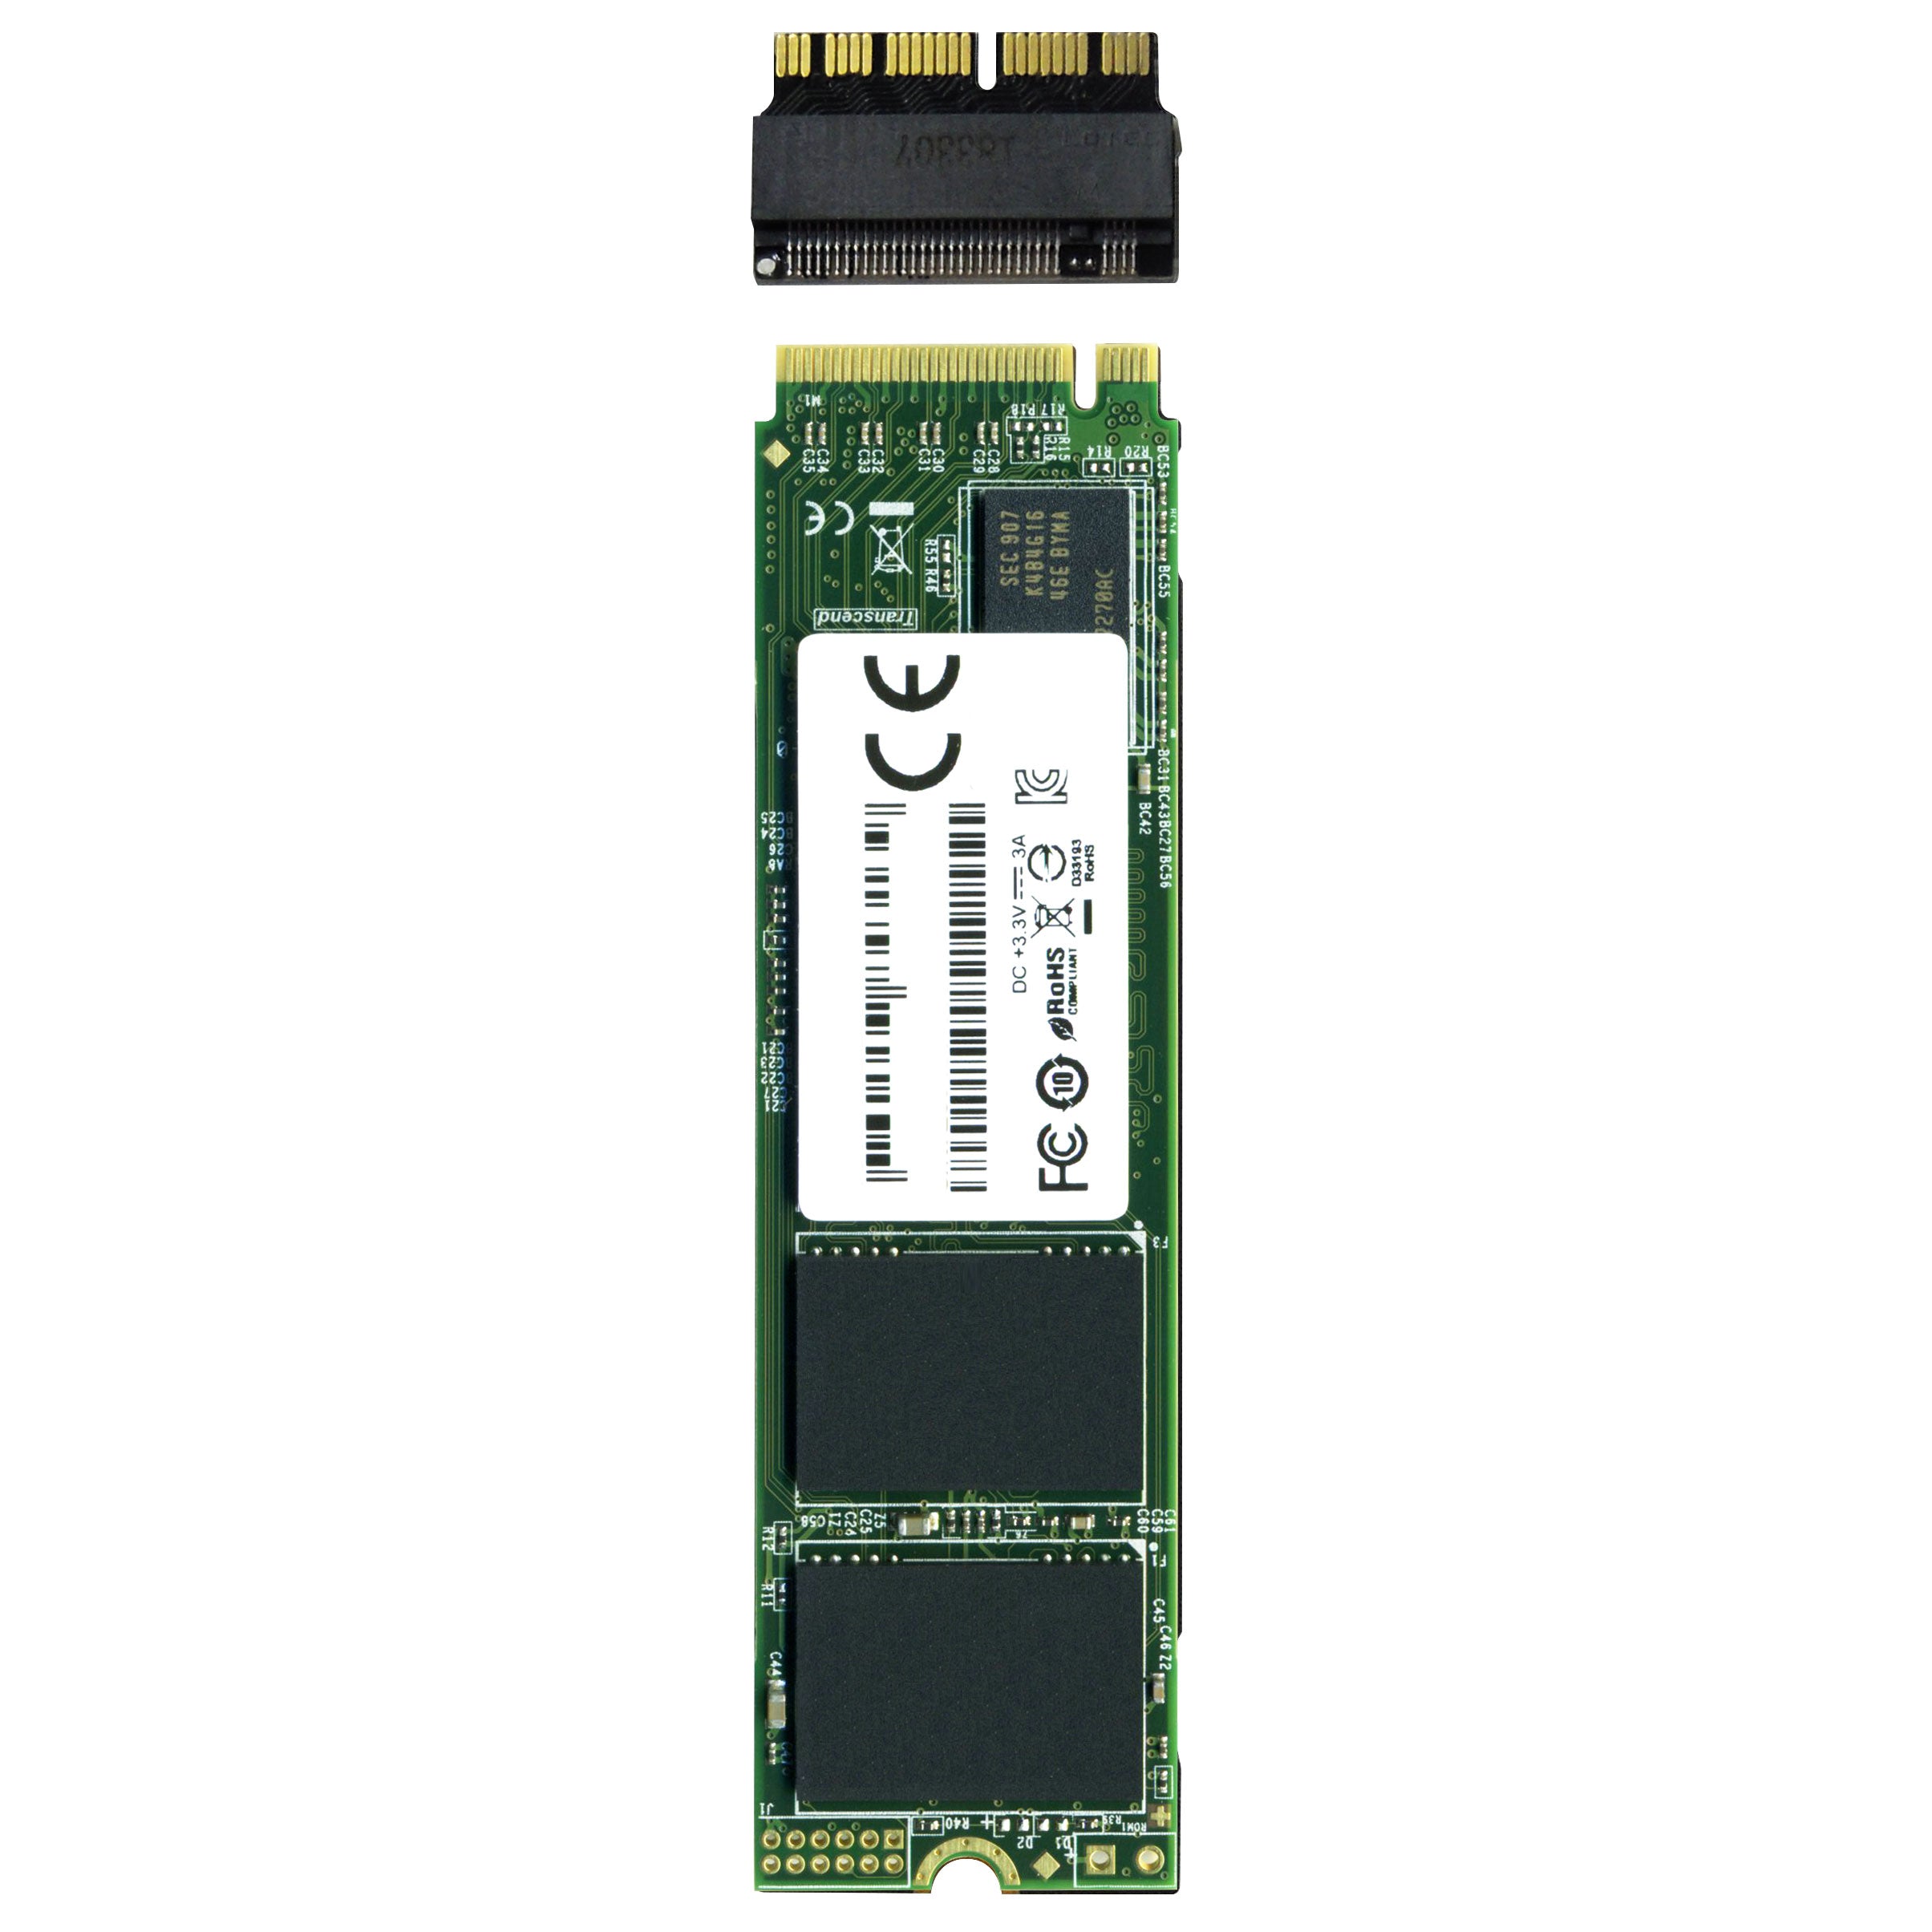 送料無料 新品 KYSSD K200 内蔵SSD 512GB PCIe3.0 NVMe M.2 2280 5年保証